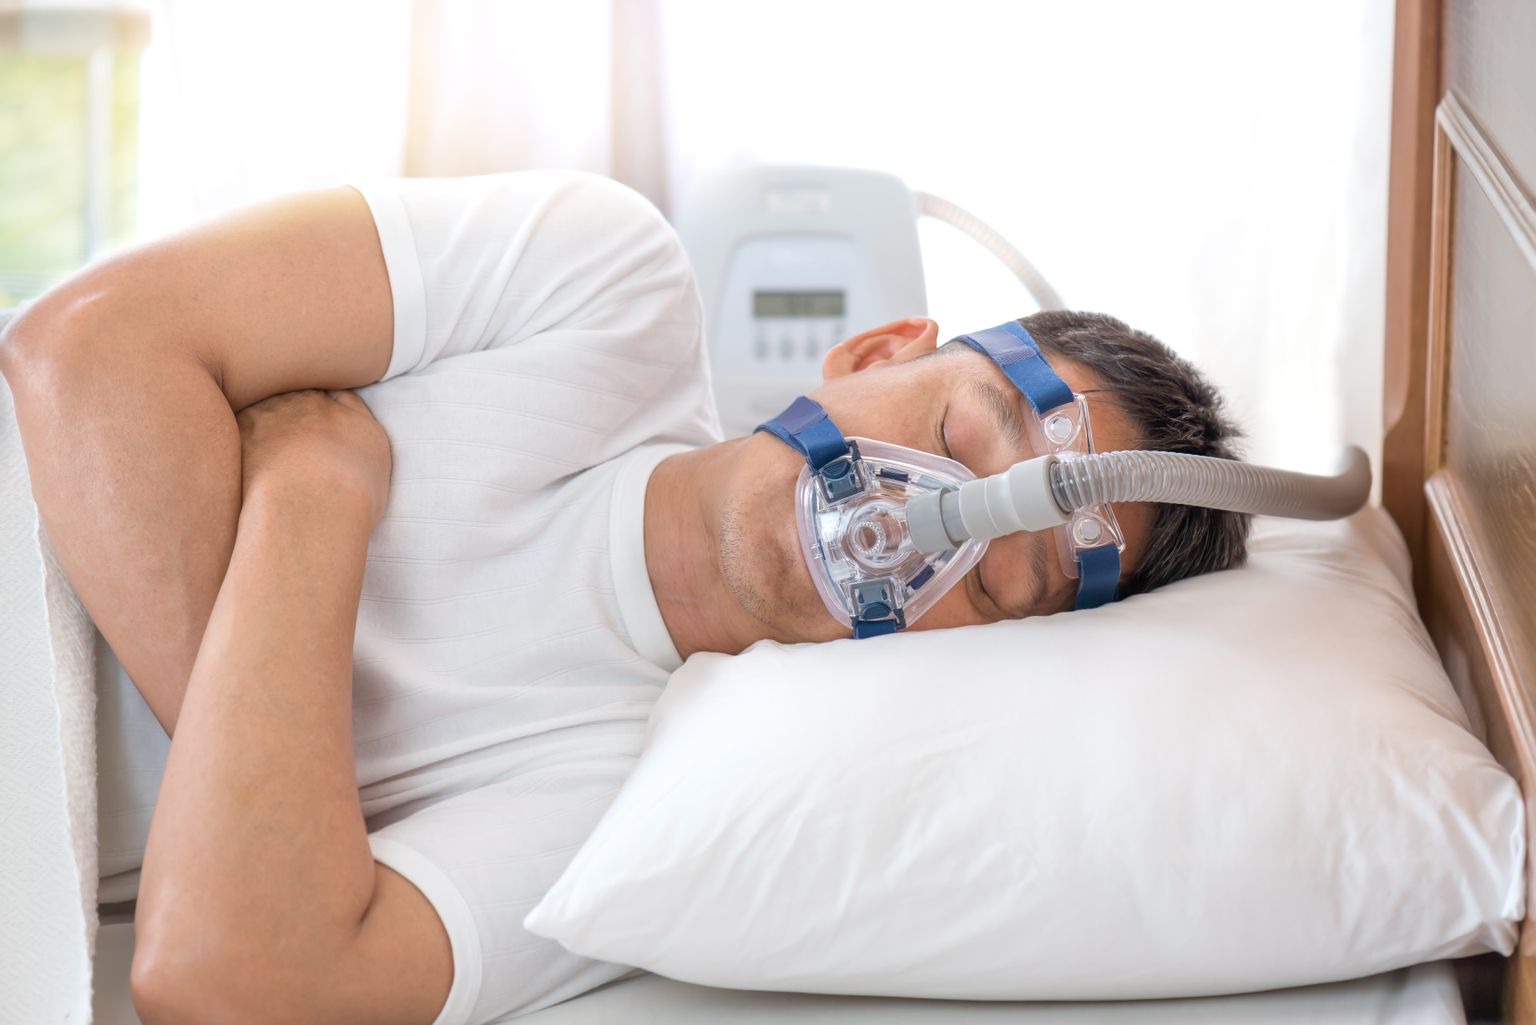 Ein älterer Herr trägt eine Atmungsmaske während er auf der Seite im Bett liegend versucht einzuschlafen.